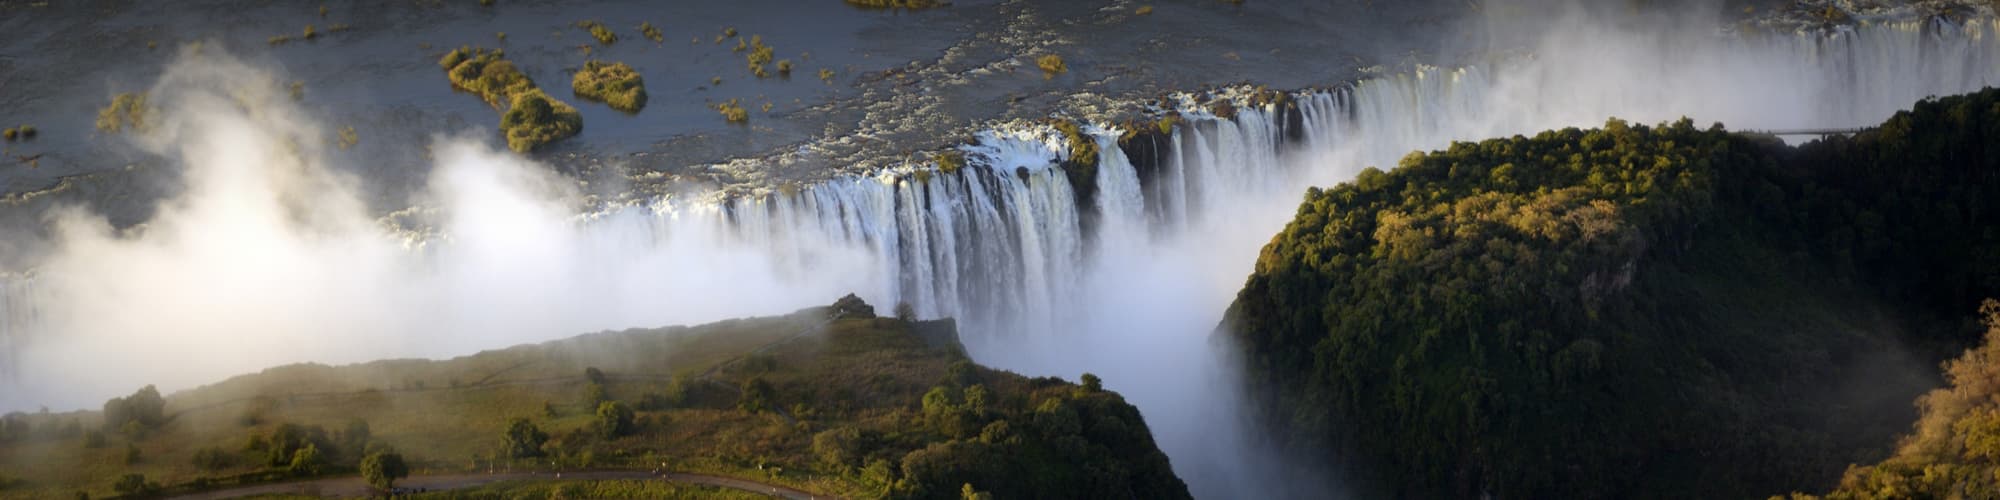 Voyage sur mesure Zimbabwe © Wolfgang_Steiner